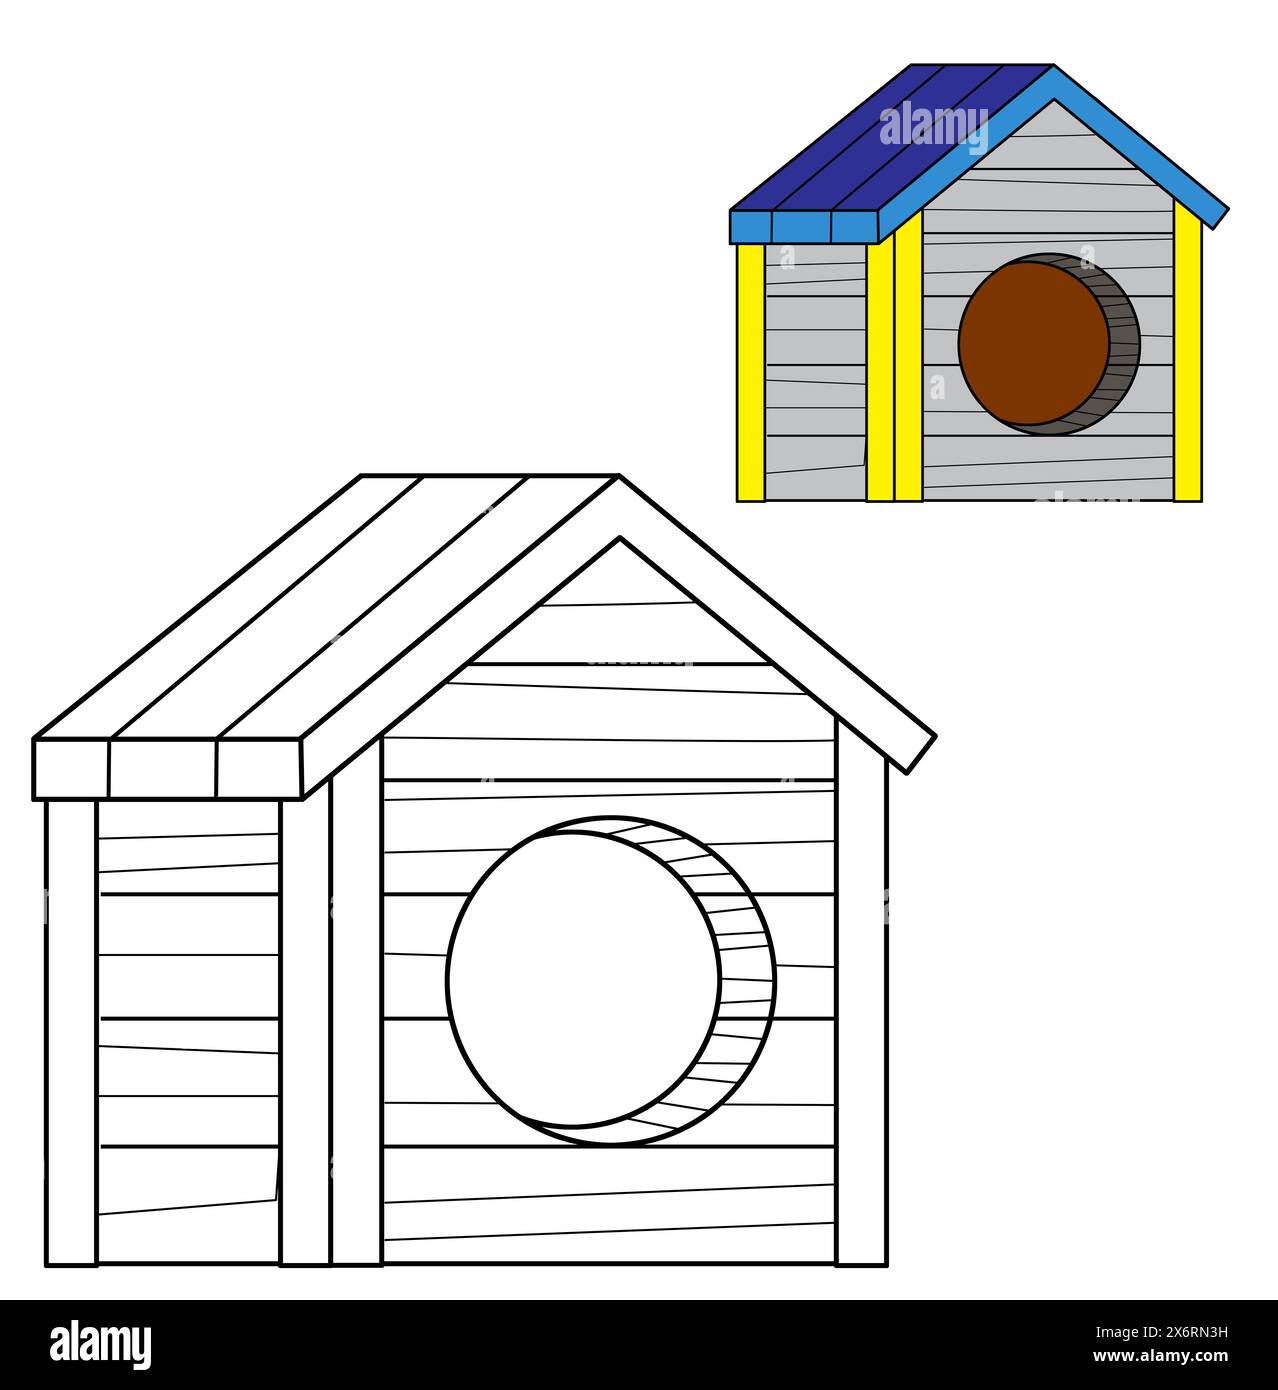 scène de dessin animé avec canin de dessin de page de coloriage traditionnel en bois isolé de maison de chien pour arrière-cour illustration de fond isolée pour les enfants Banque D'Images